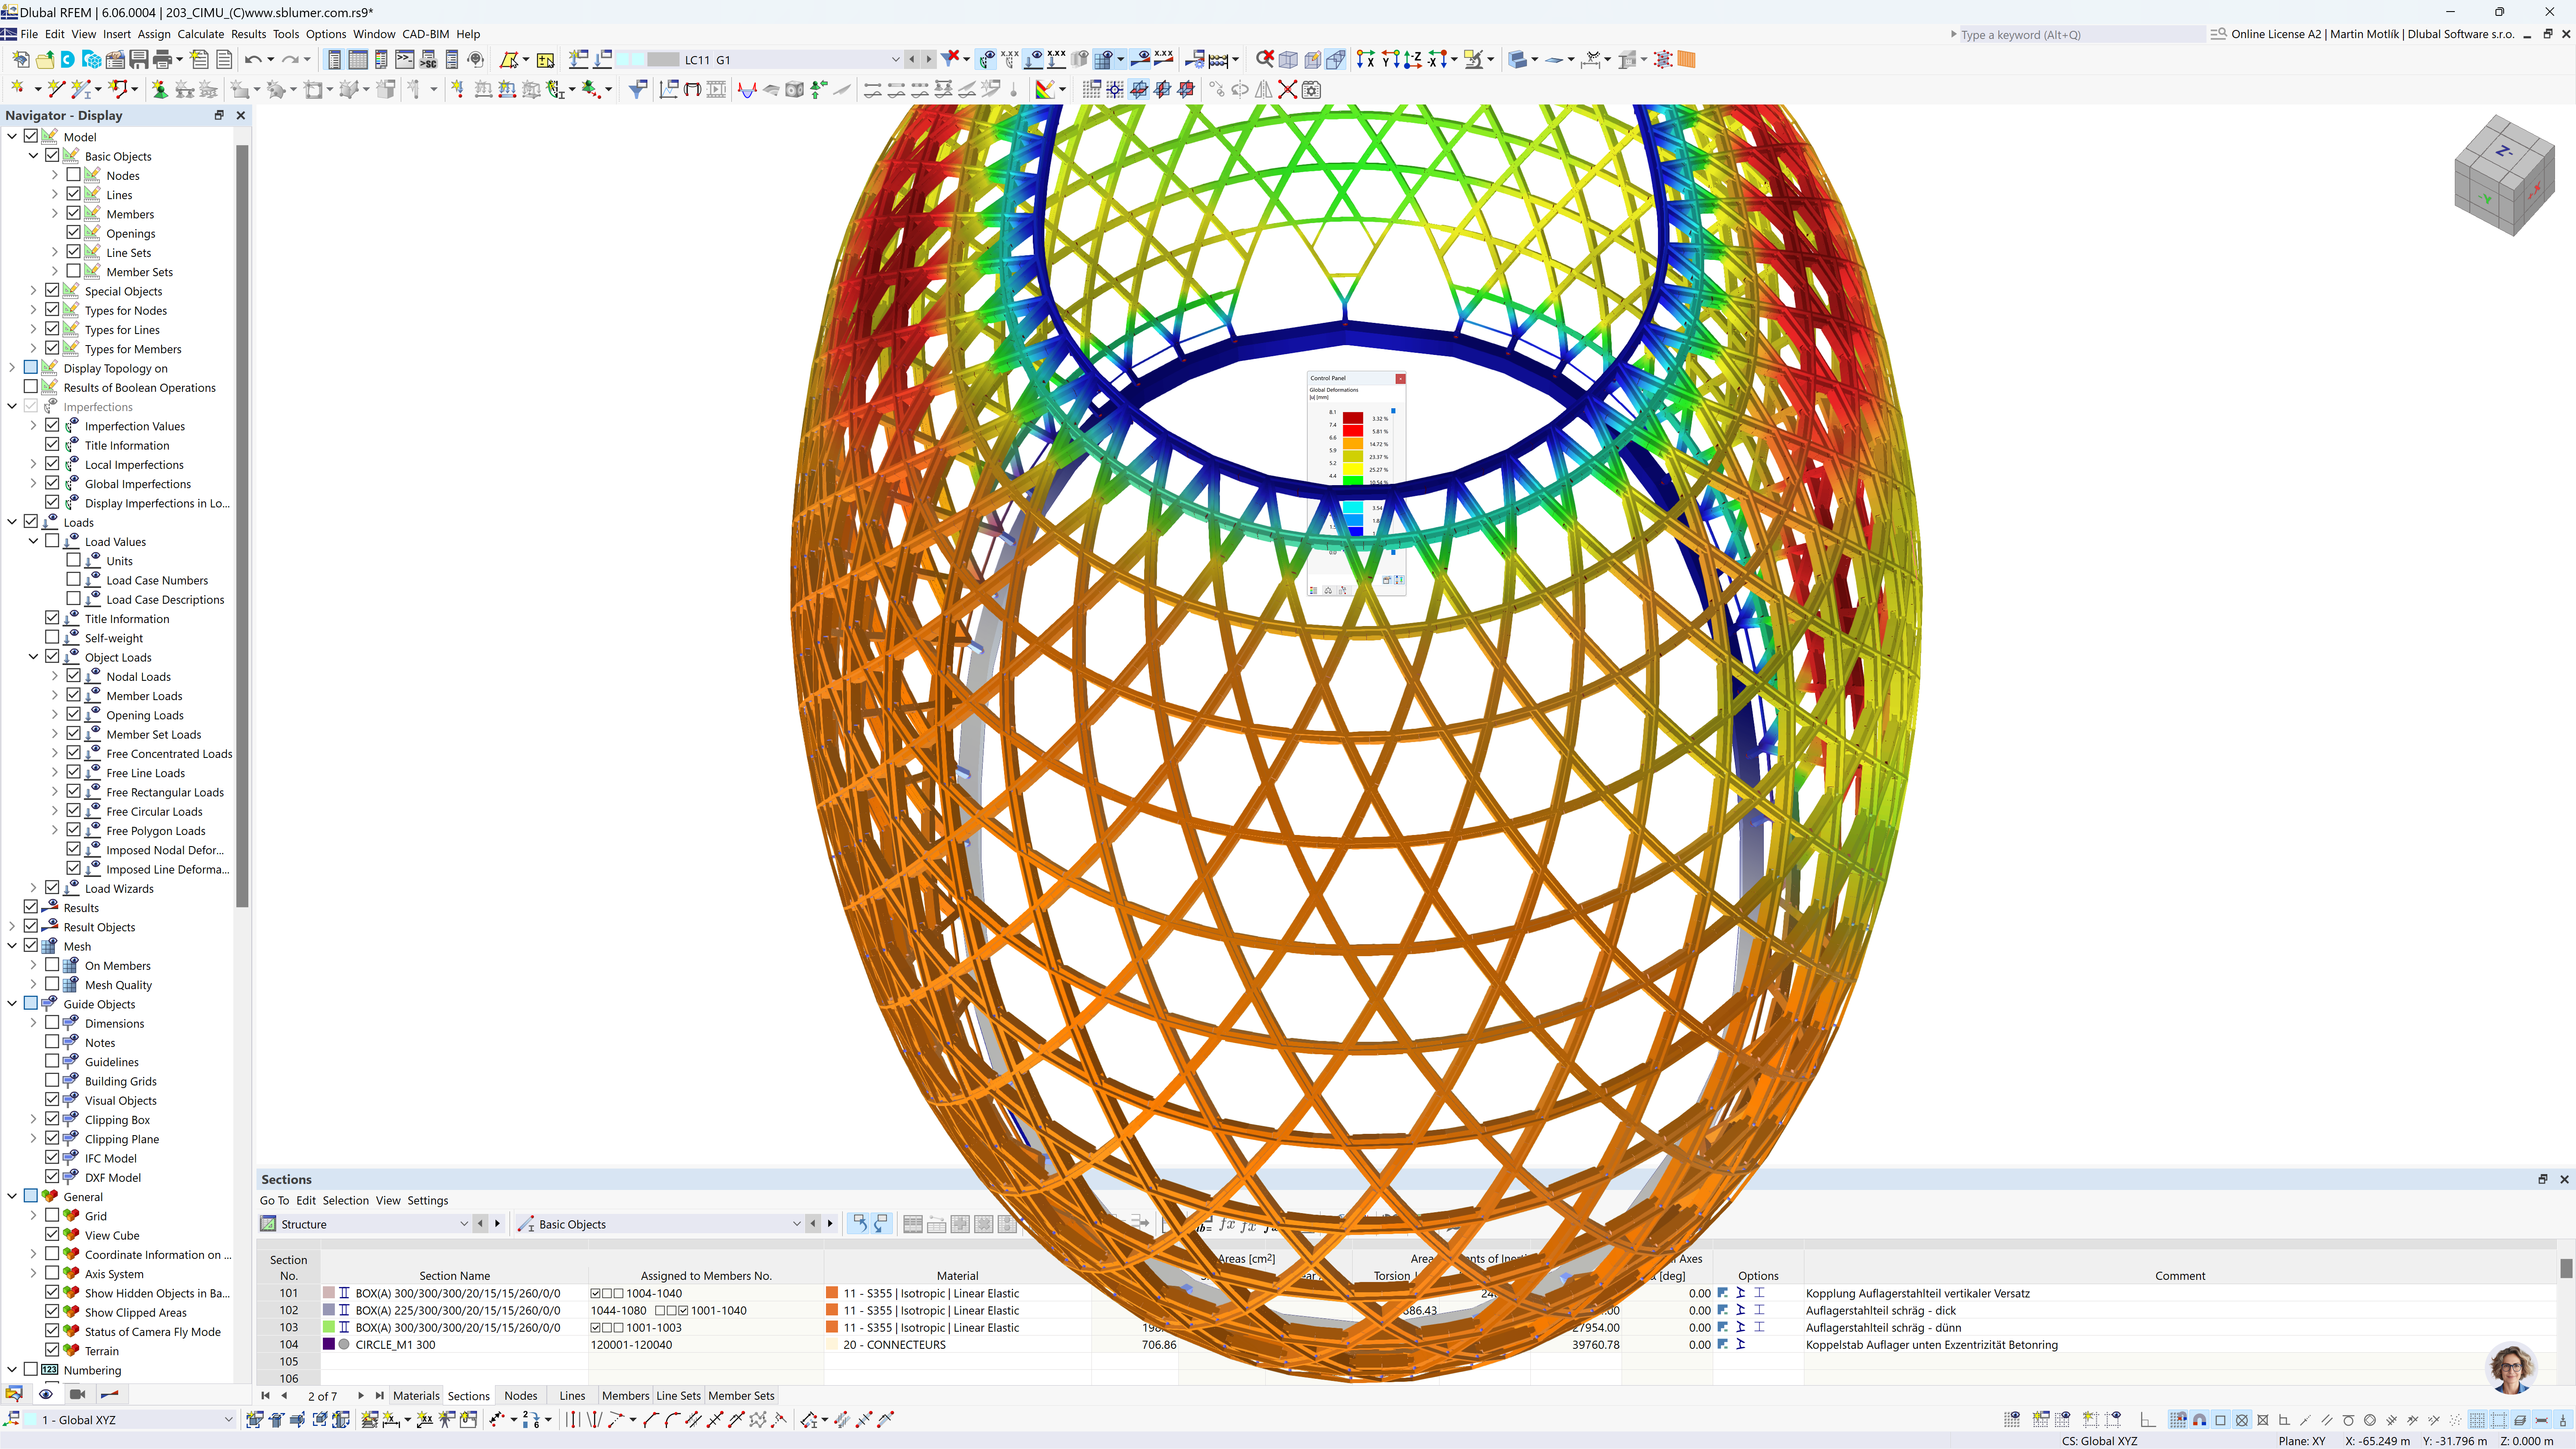 Esta imagem apresenta uma captura de ecrã do software de cálculo estrutural RFEM, possivelmente utilizado para engenharia civil ou arquitetura. A vista principal mostra um modelo 3D de uma estrutura de treliça toroidal multicolorida, em que cada cor representa, provavelmente, diferentes valores de tensão ou materiais.